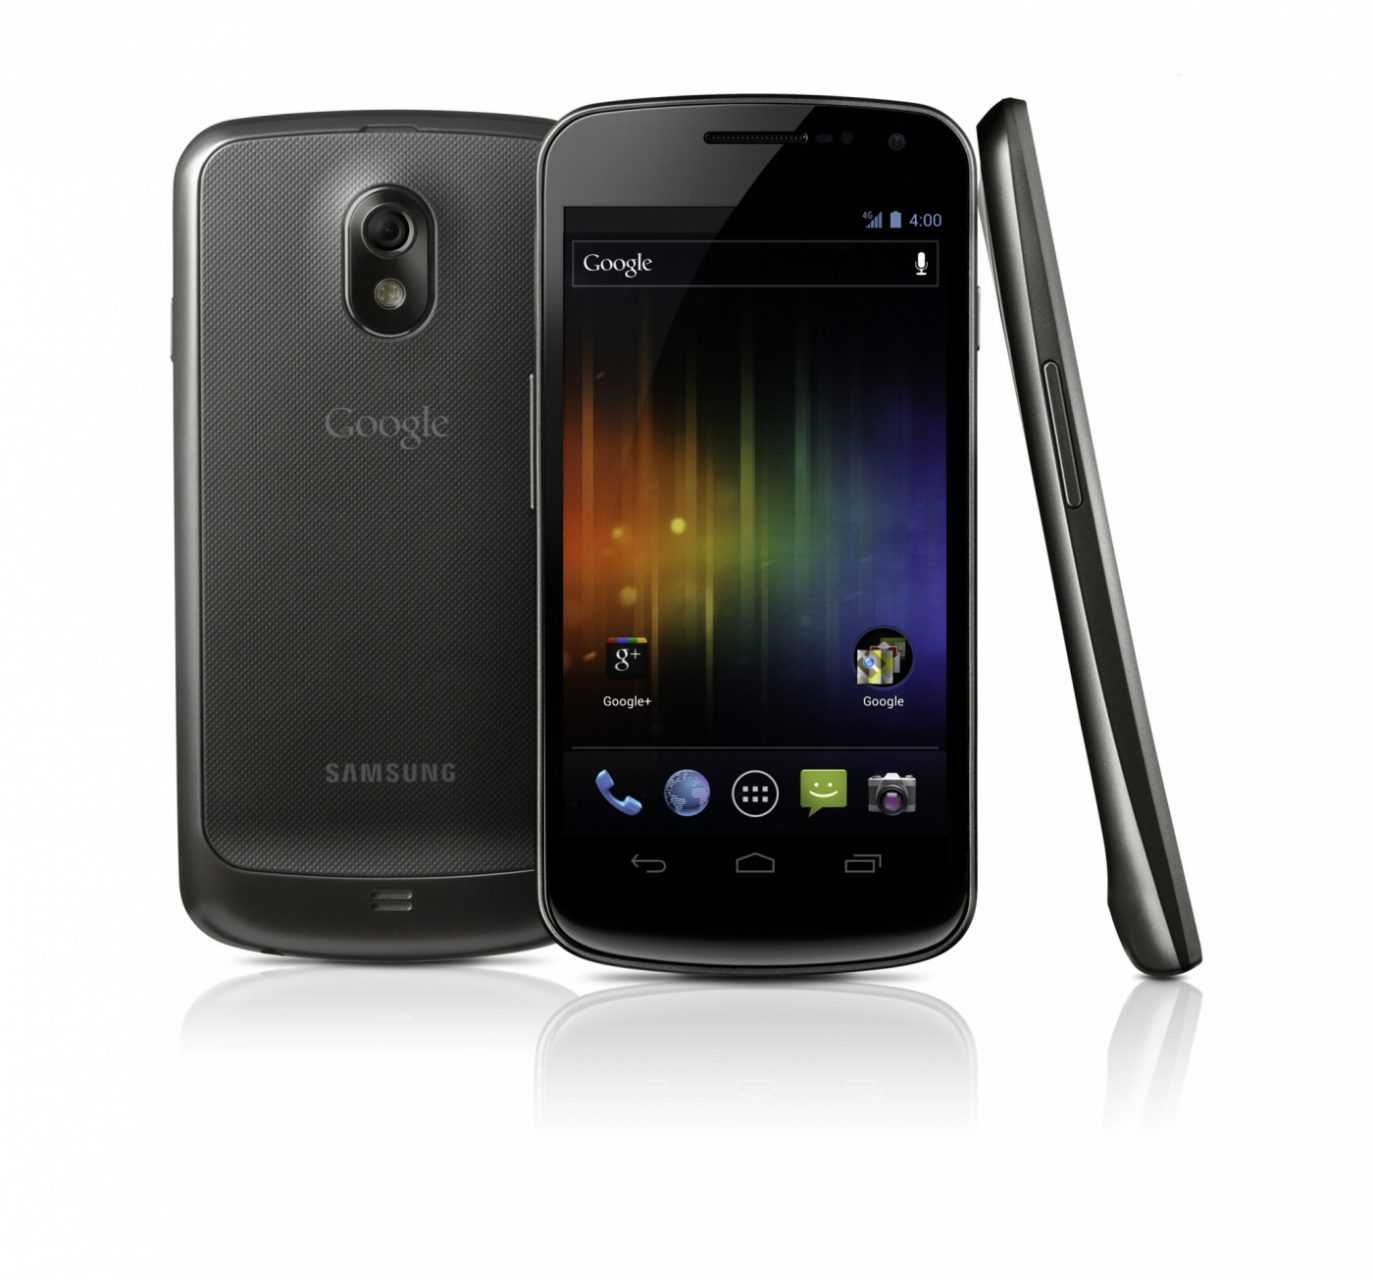 Samsung galaxy nexus i9250 titan silver (серый) - купить , скидки, цена, отзывы, обзор, характеристики - мобильные телефоны